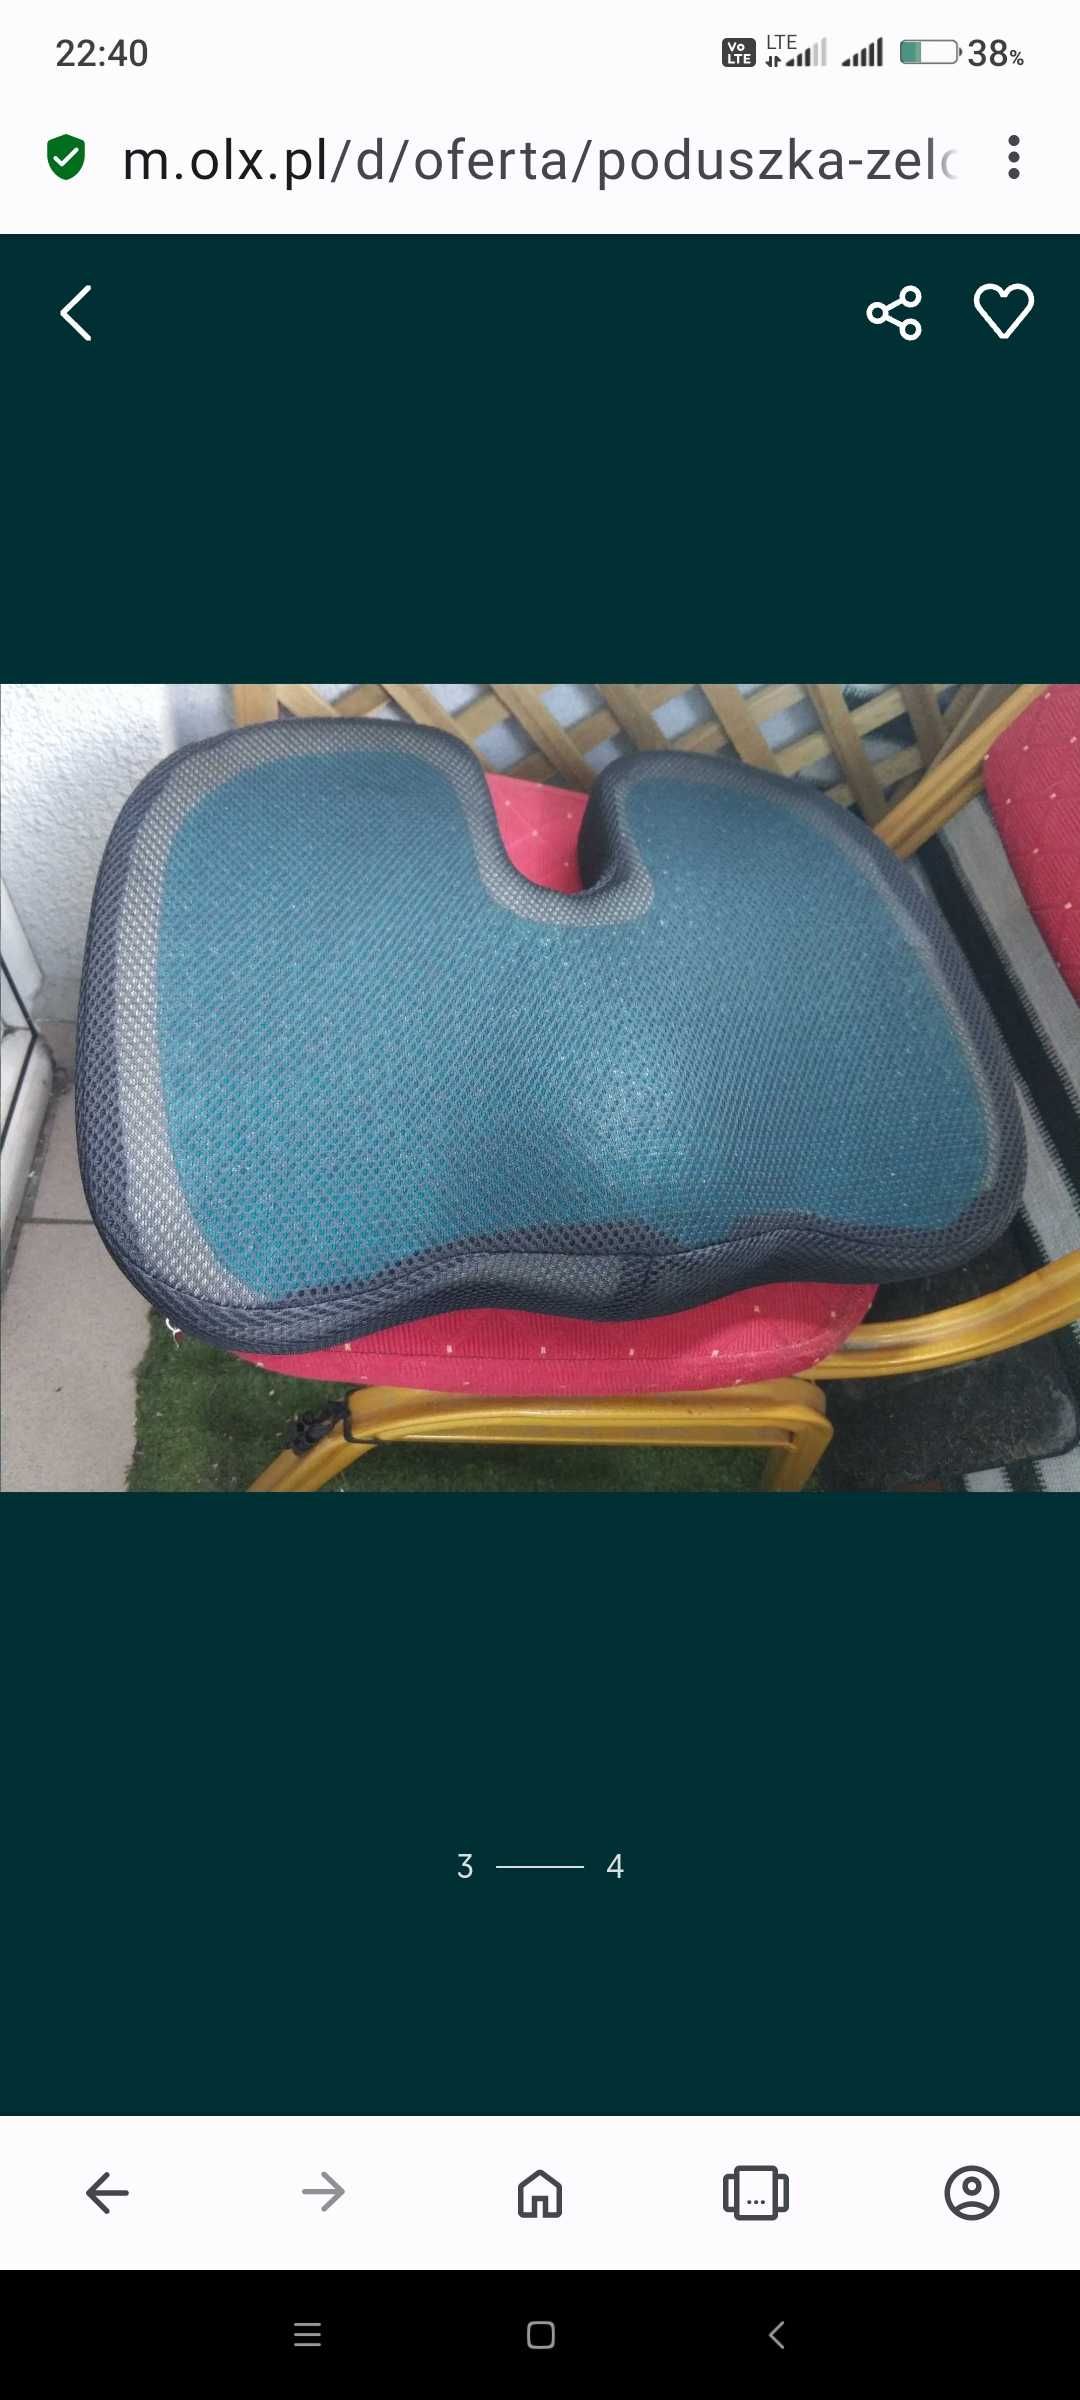 Poduszka Żelowa Chłodząca Ortopedyczna na Krzesło Fotel Siedzisko Nowa